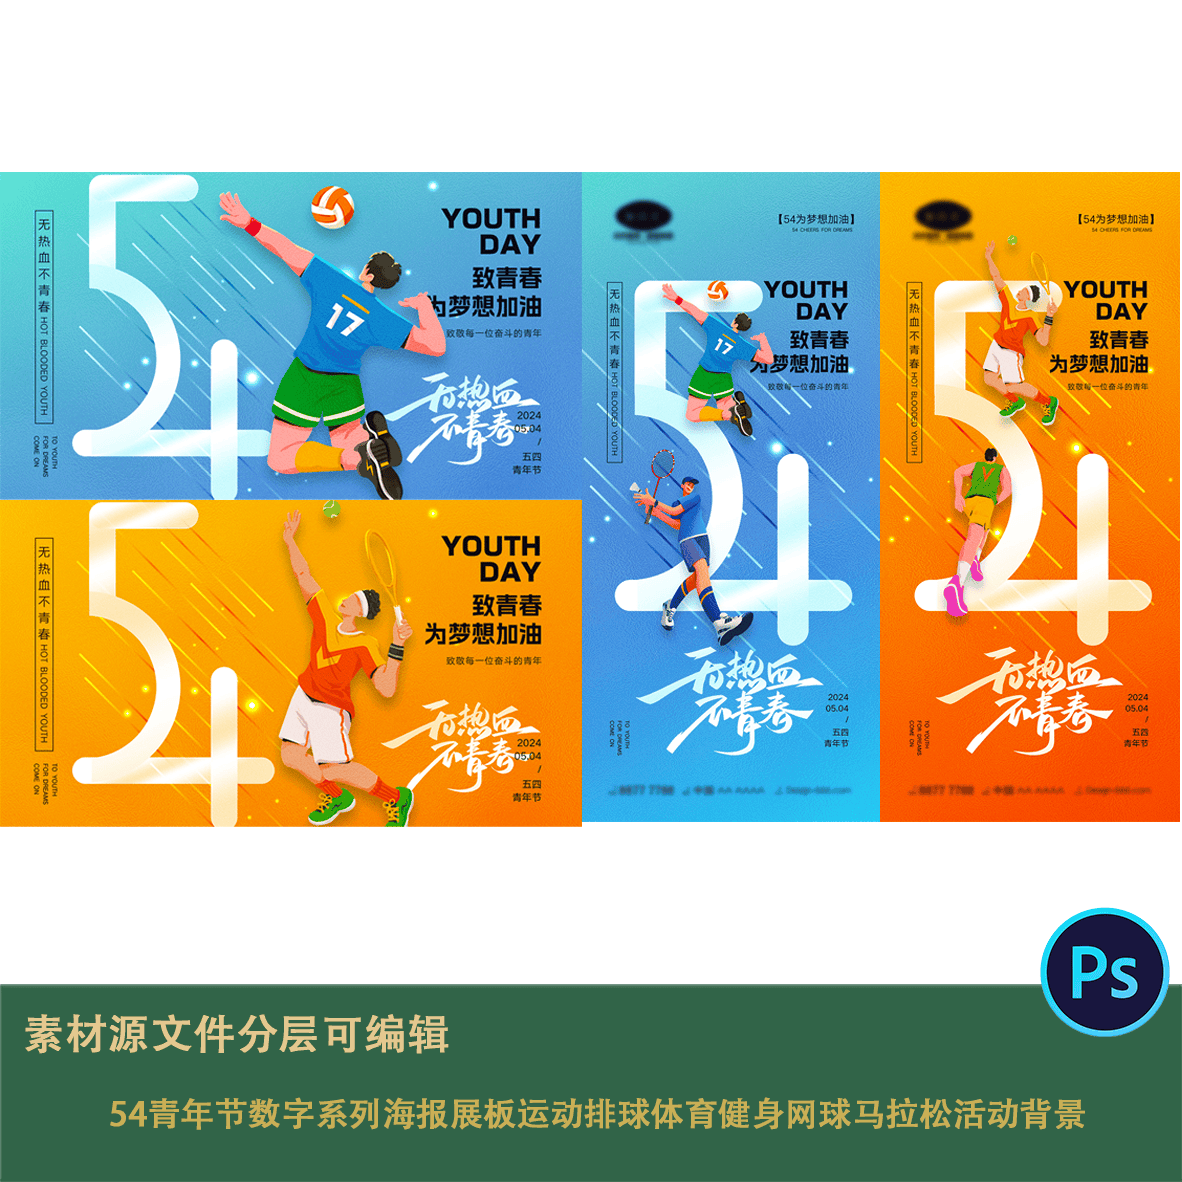 54青年节数字系列海报展板运动排球体育健身网球马拉松活动背景ps